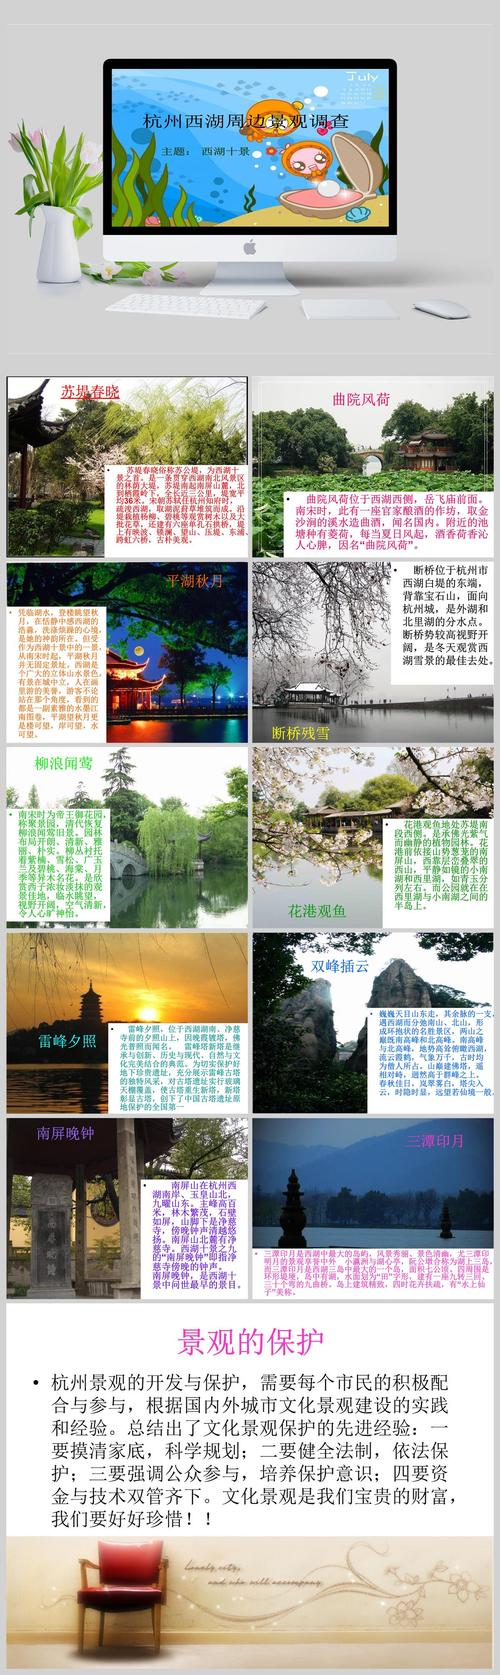 杭州西湖风景名胜区文案